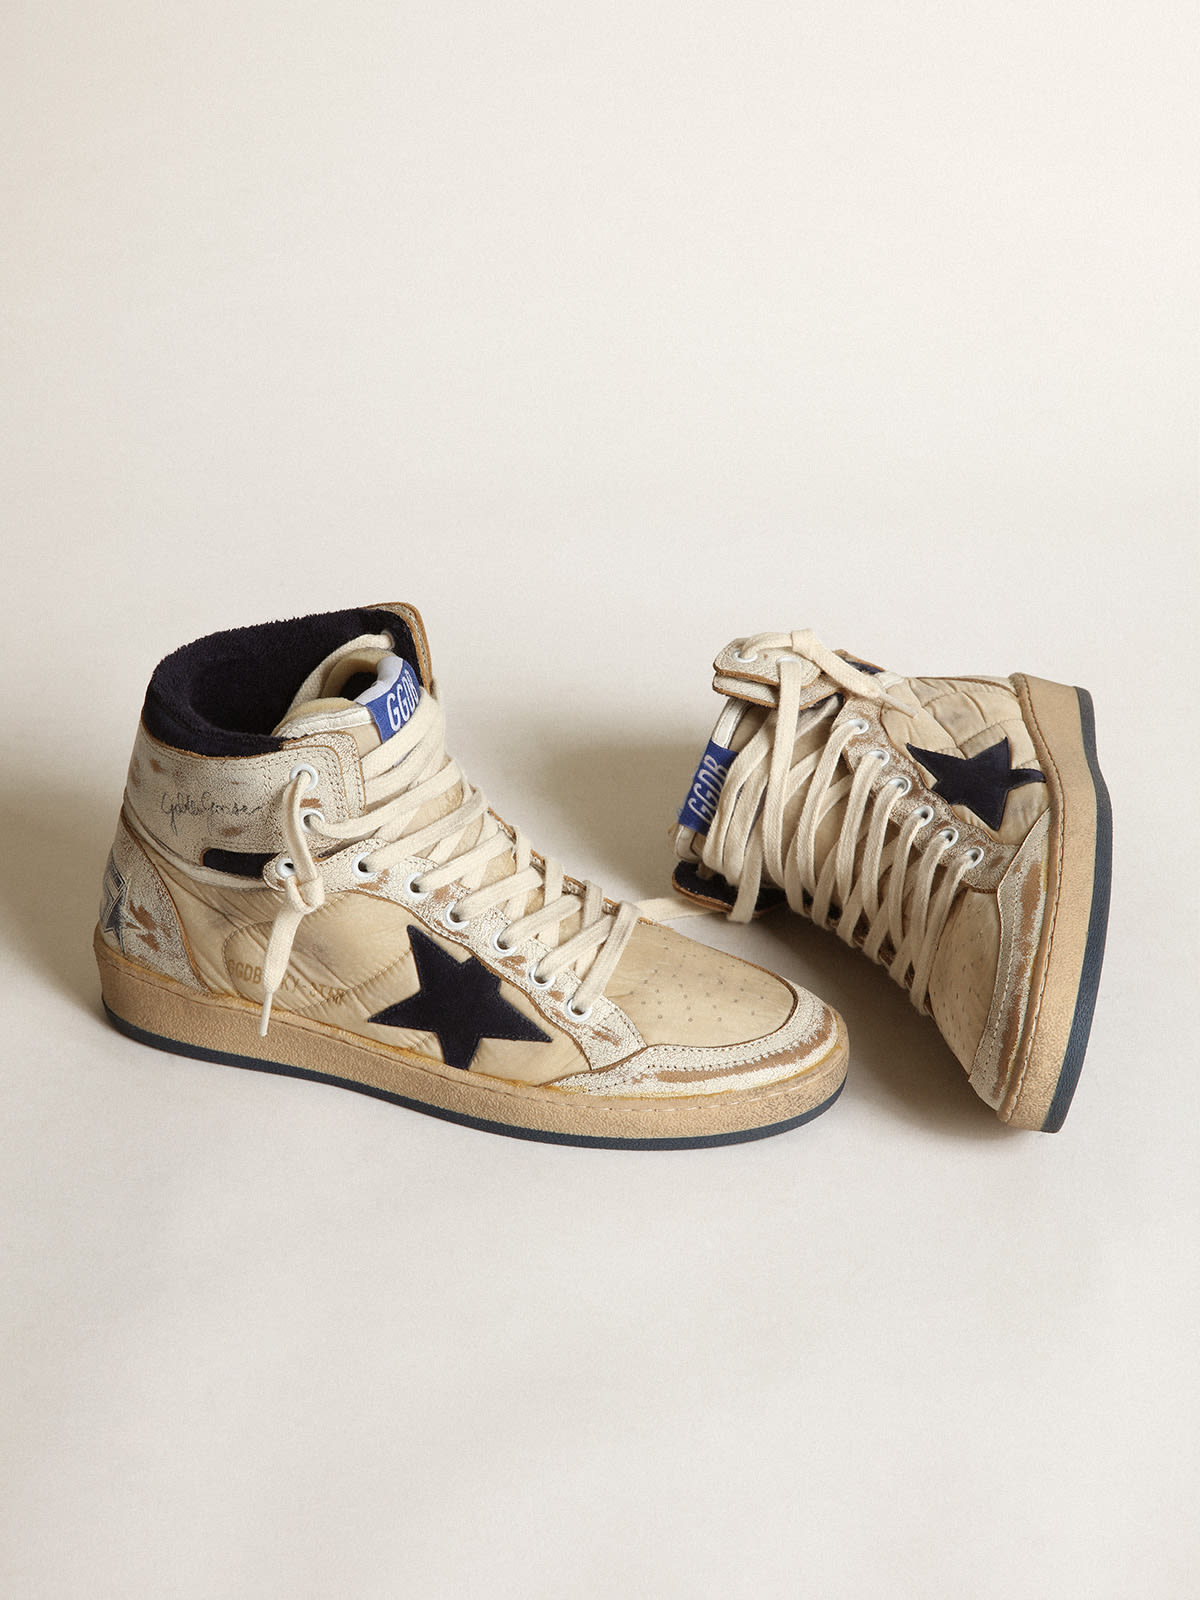 Golden Goose - Sneaker Sky-Star donna in nylon color panna e pelle bianca con stella in suede blu scuro in 